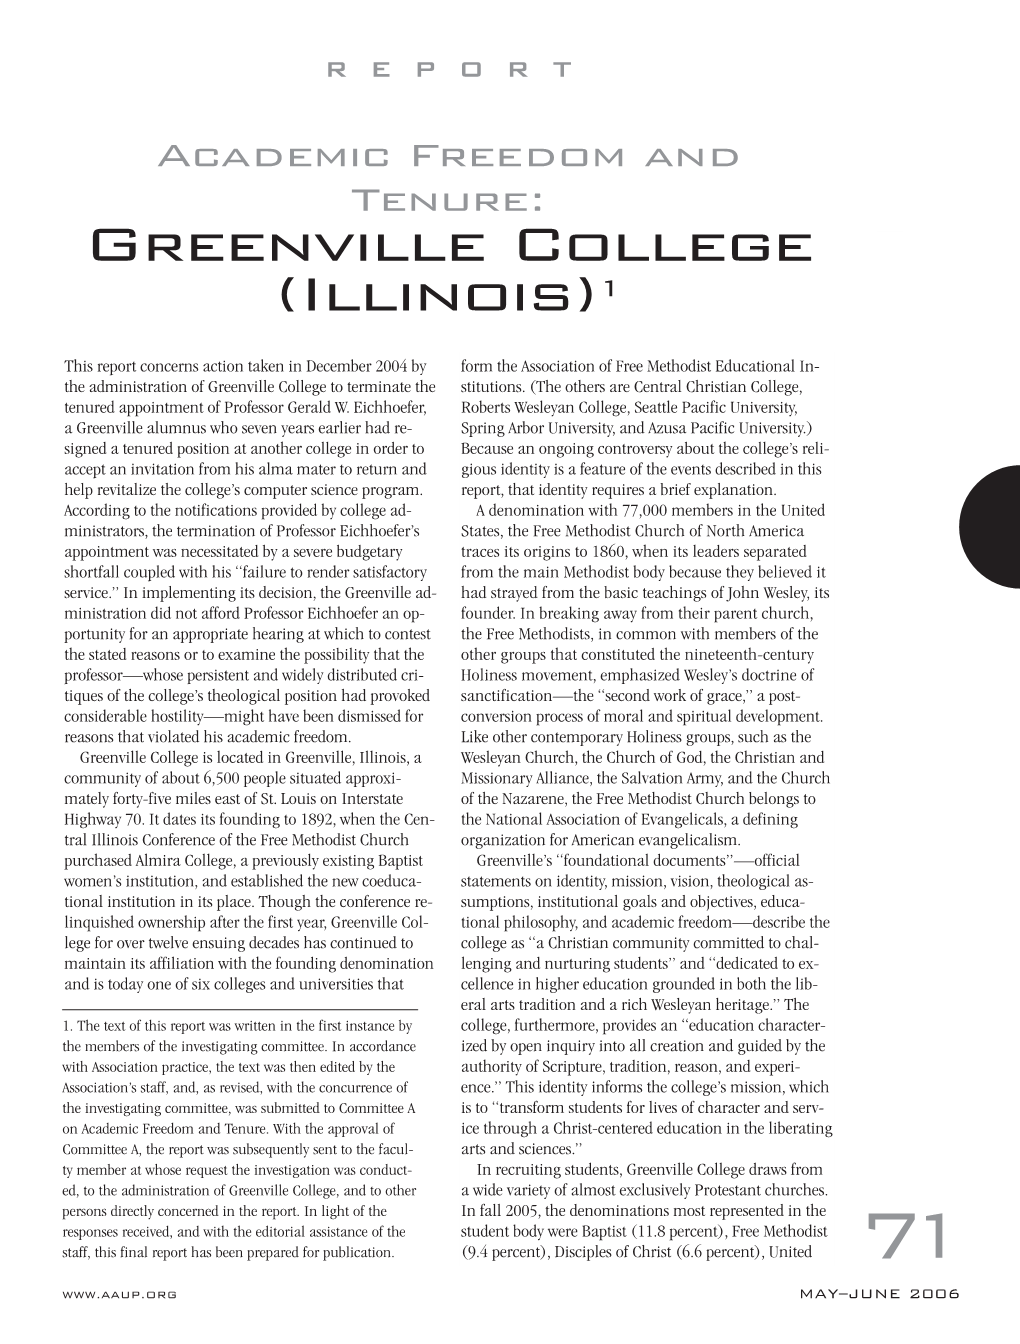 Greenville College (Illinois)1